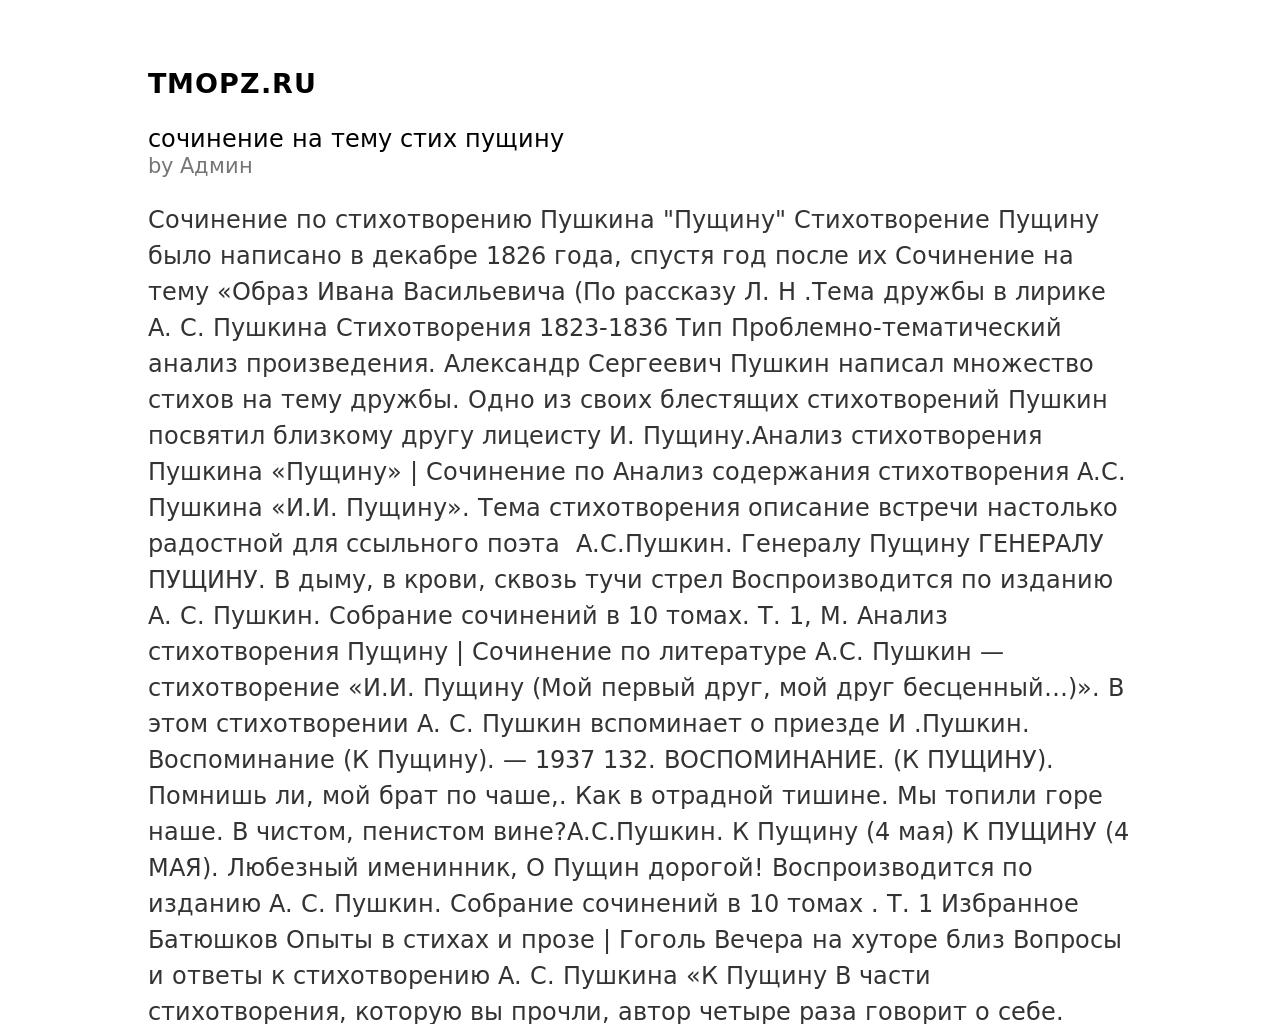 Изображение сайта tmopz.ru в разрешении 1280x1024